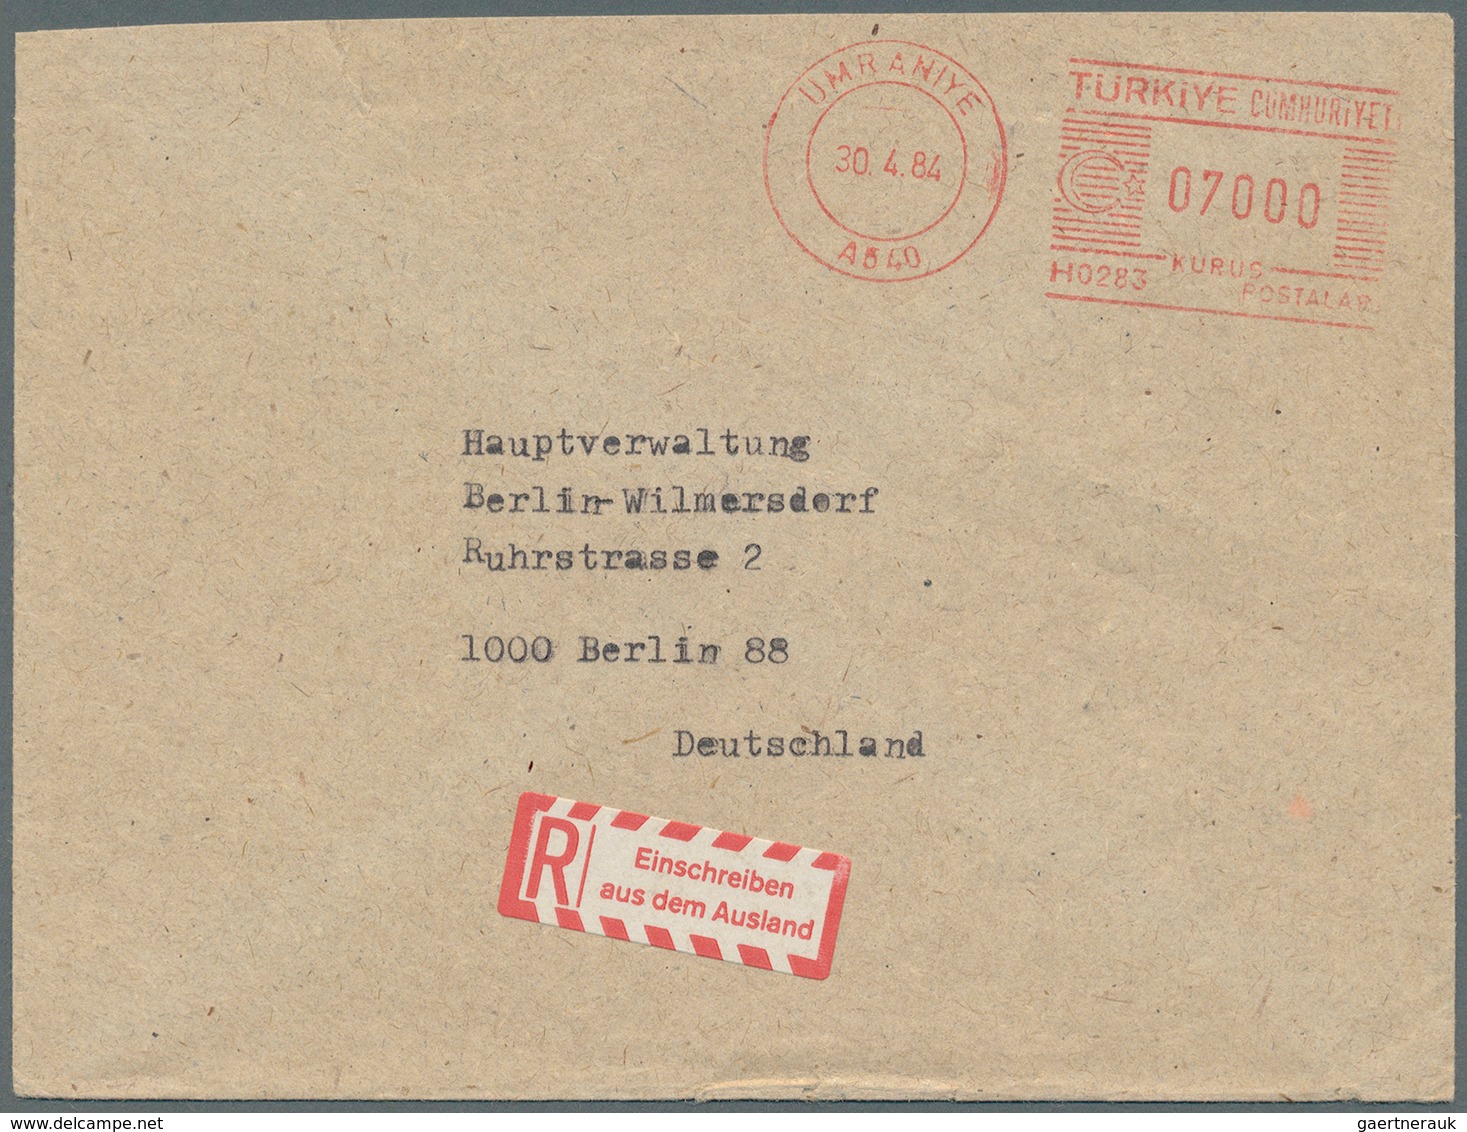 Bundesrepublik - Besonderheiten: 1953/1975, ca. 50 Stück Freimarkenfrankaturen, besondere Versendung